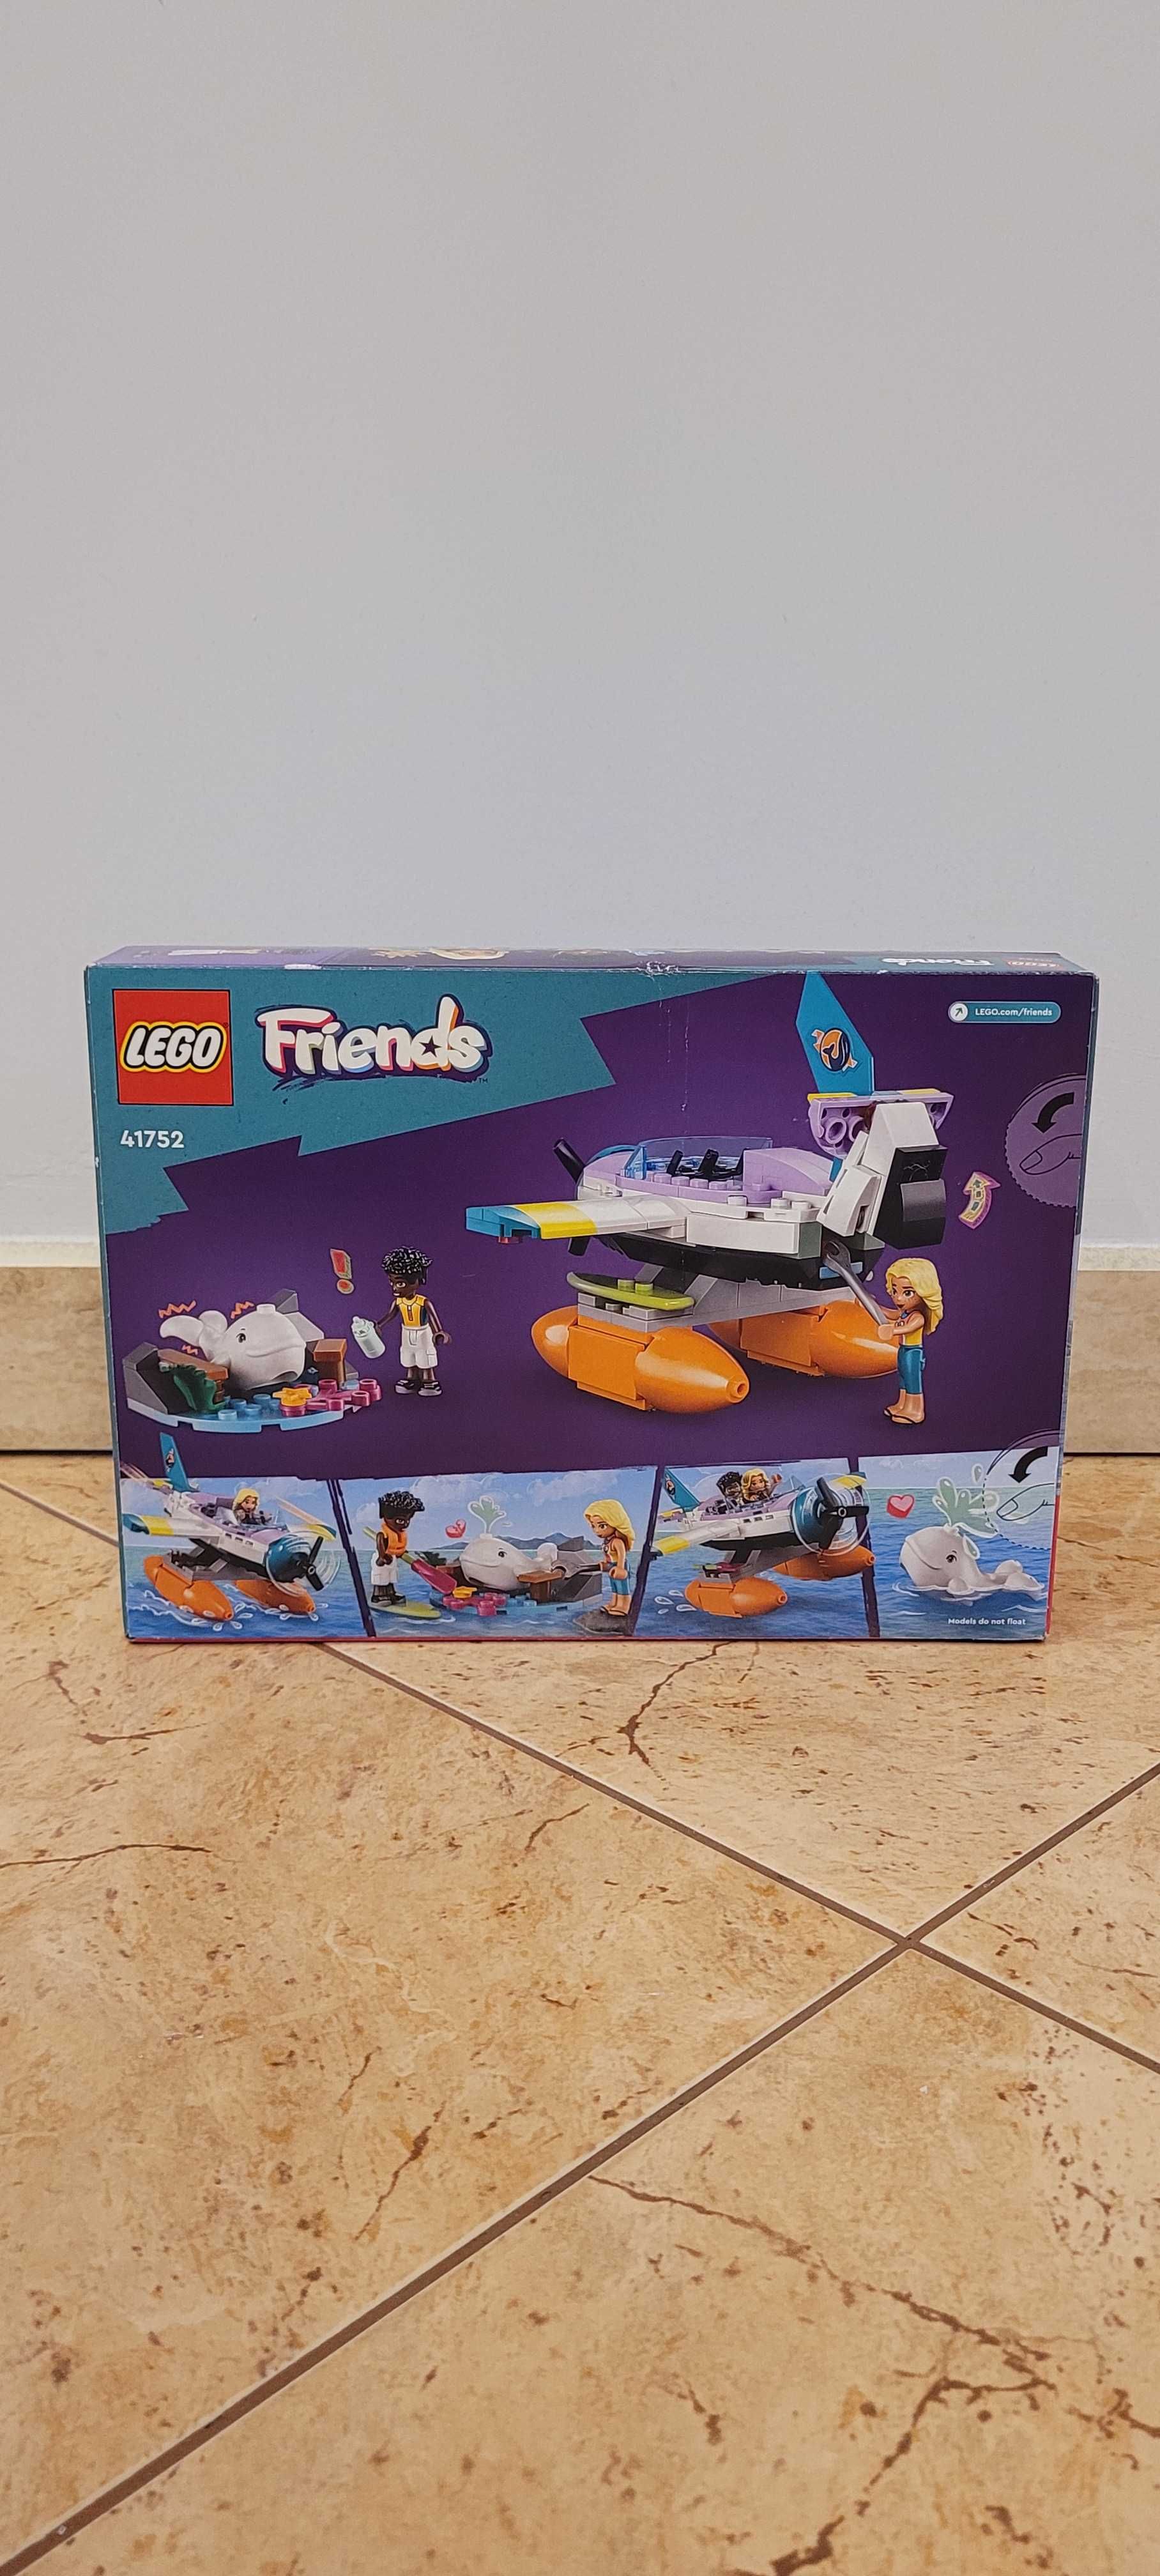 Nowe Klocki Lego Friends 41752 | Hydroplan ratowniczy | torba GRATIS